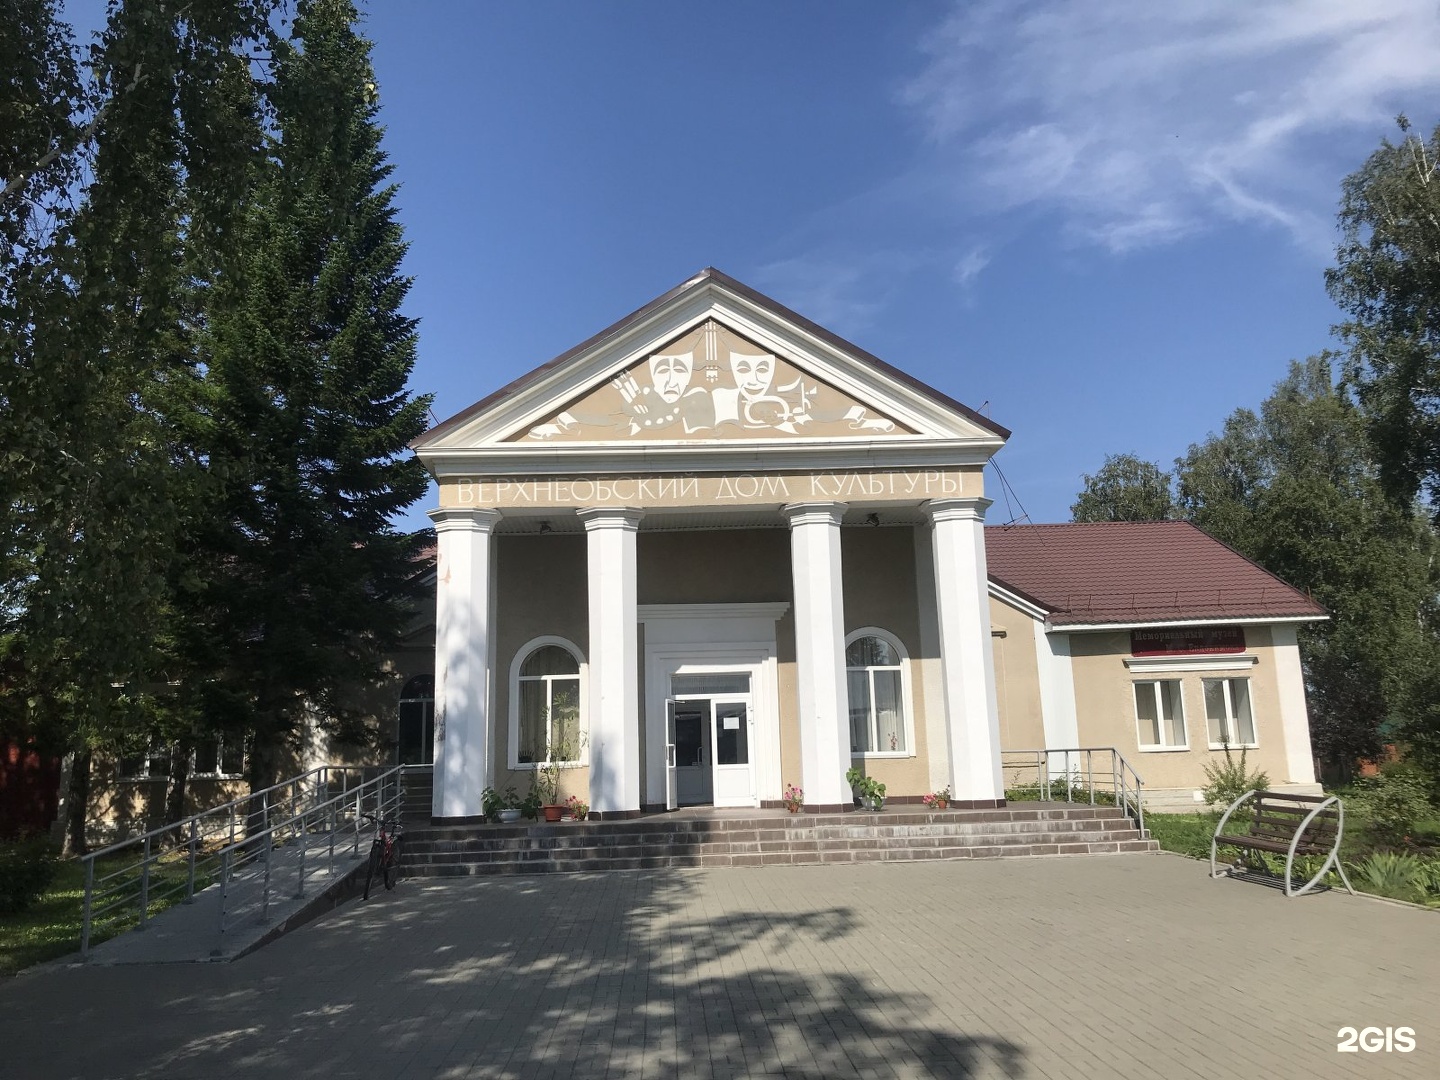 Музей евдокимова в верх обском